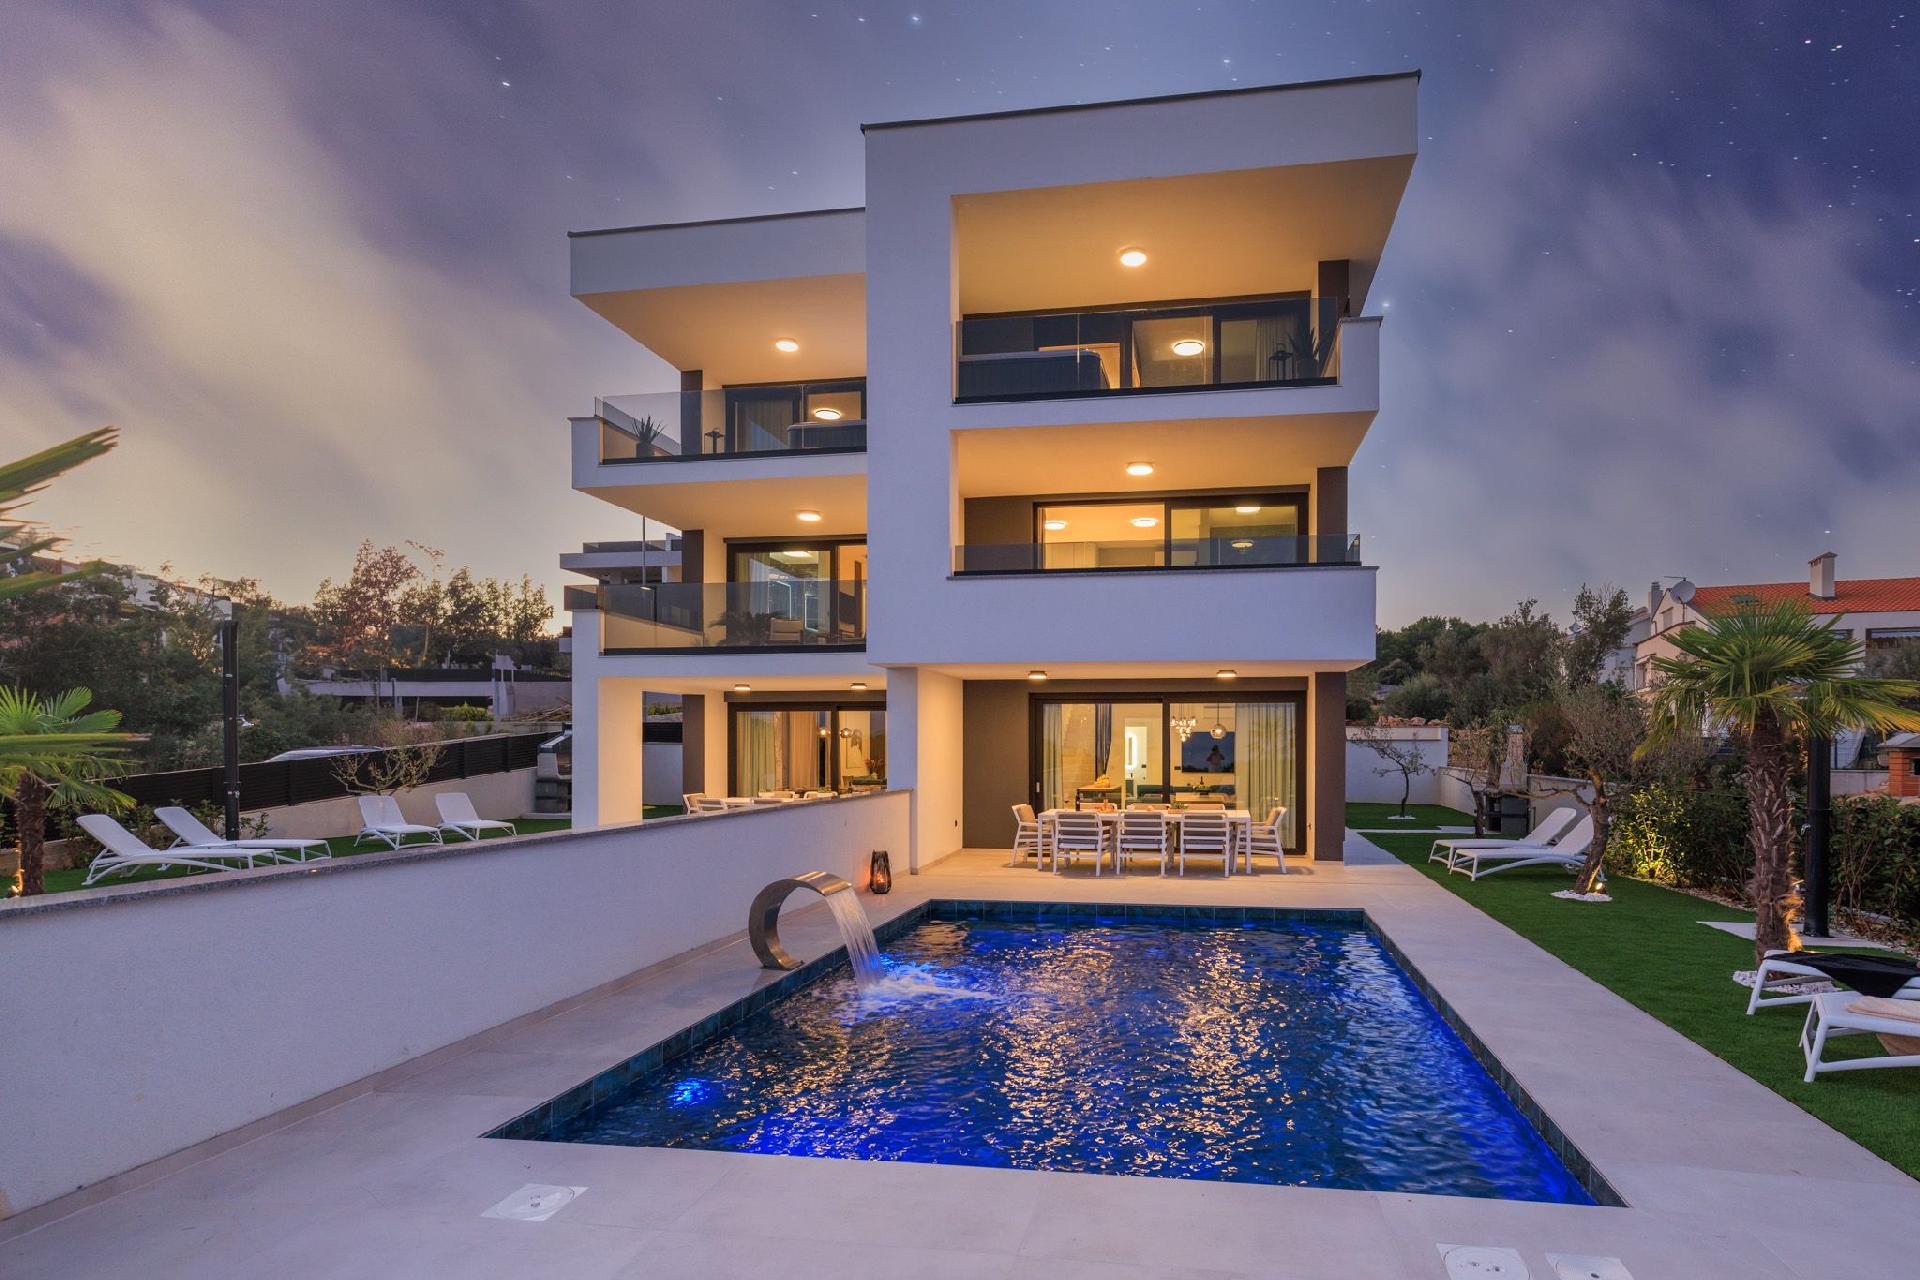 Neue moderne Villa mit Pool in der Nähe von d Ferienhaus in Kroatien